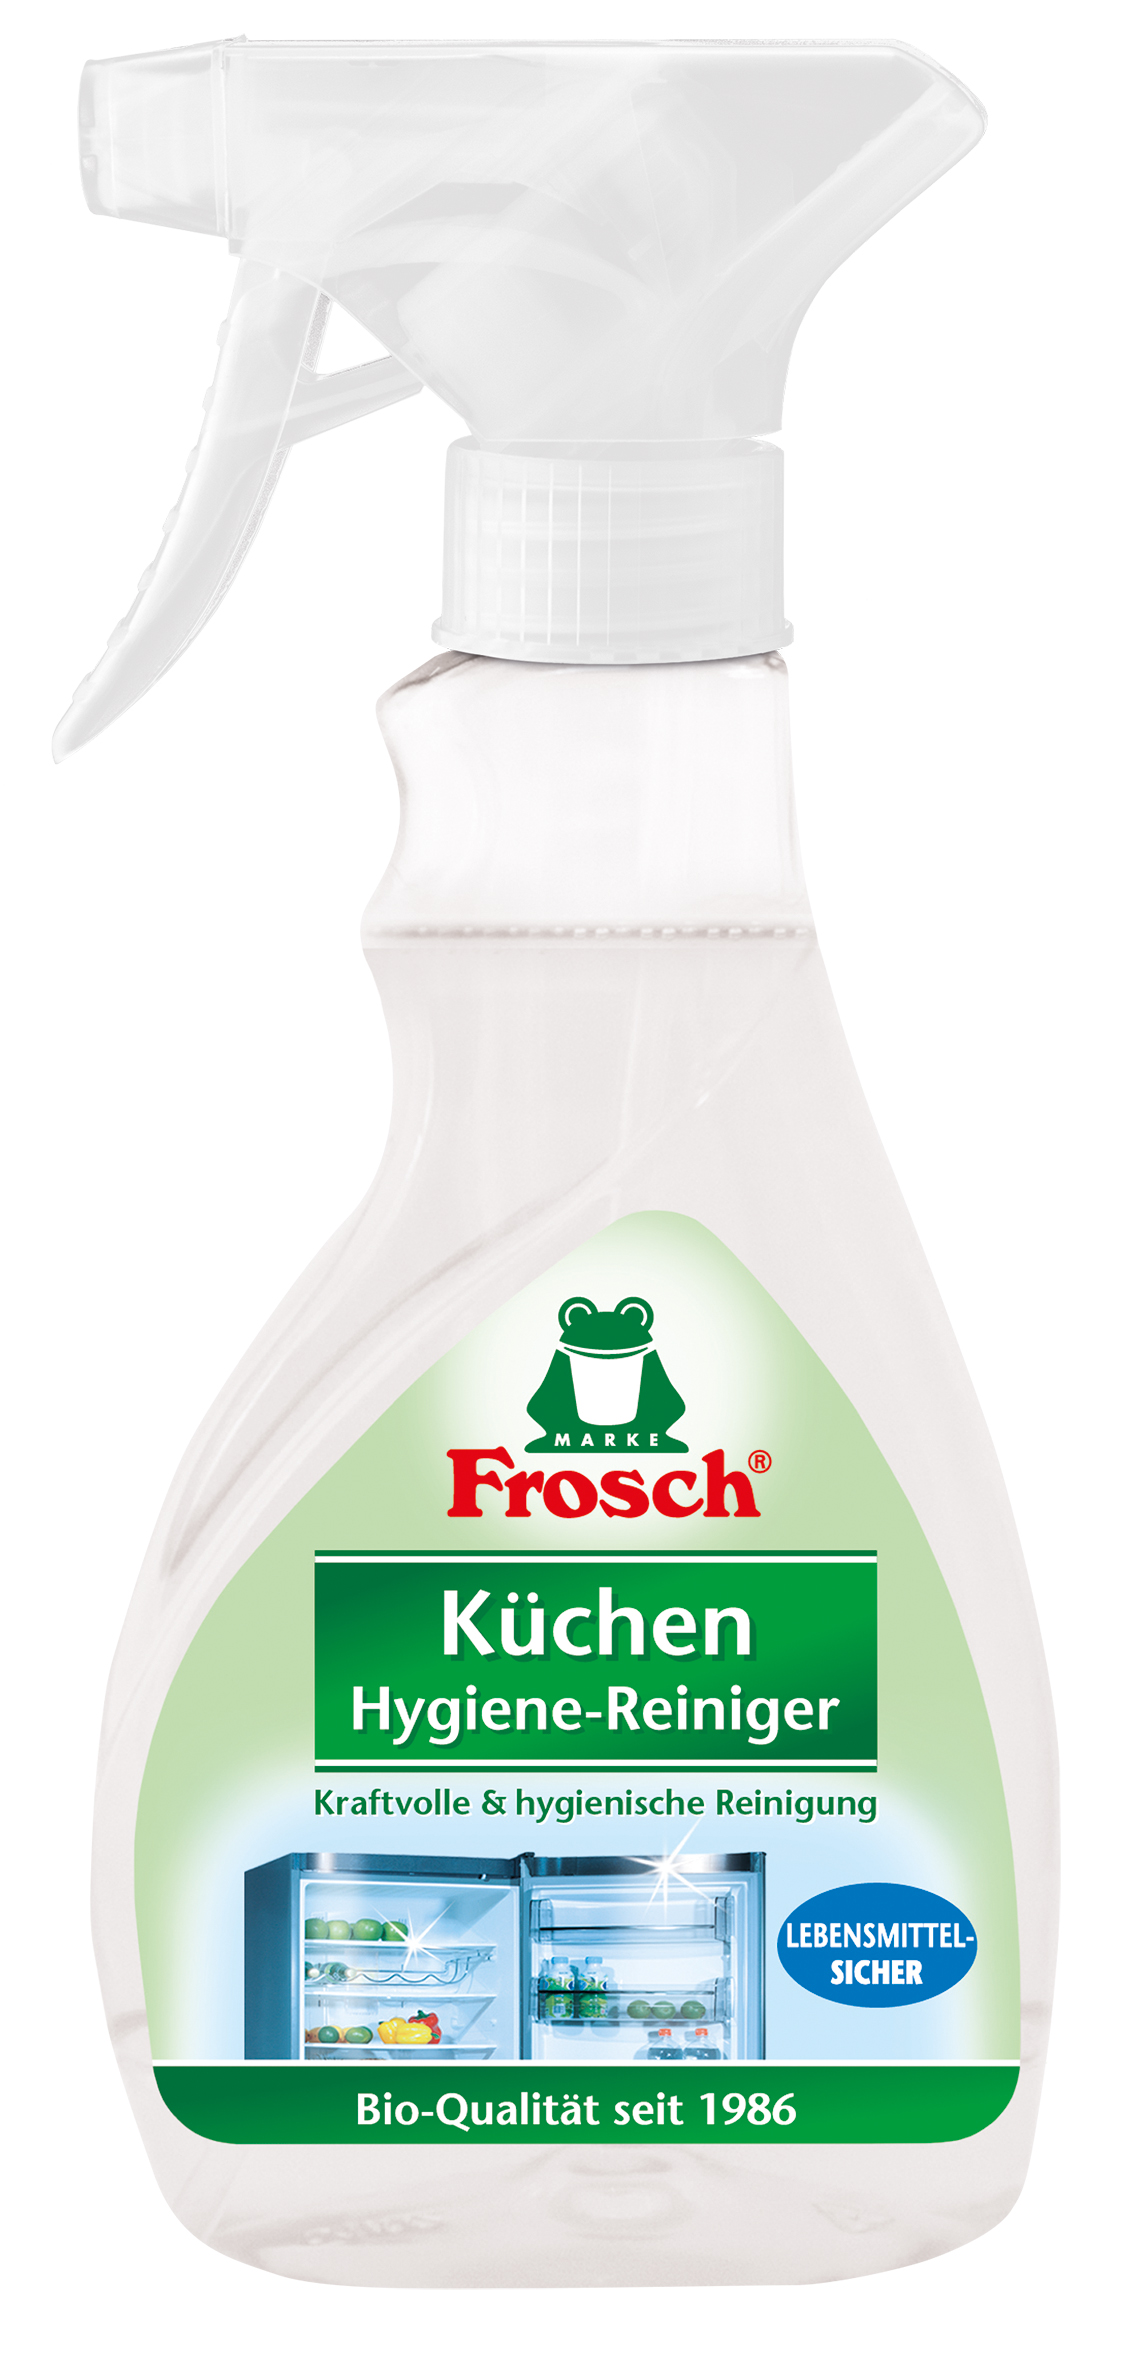 Гигиенический очиститель для кухни Frosch, 300 мл - фото 1